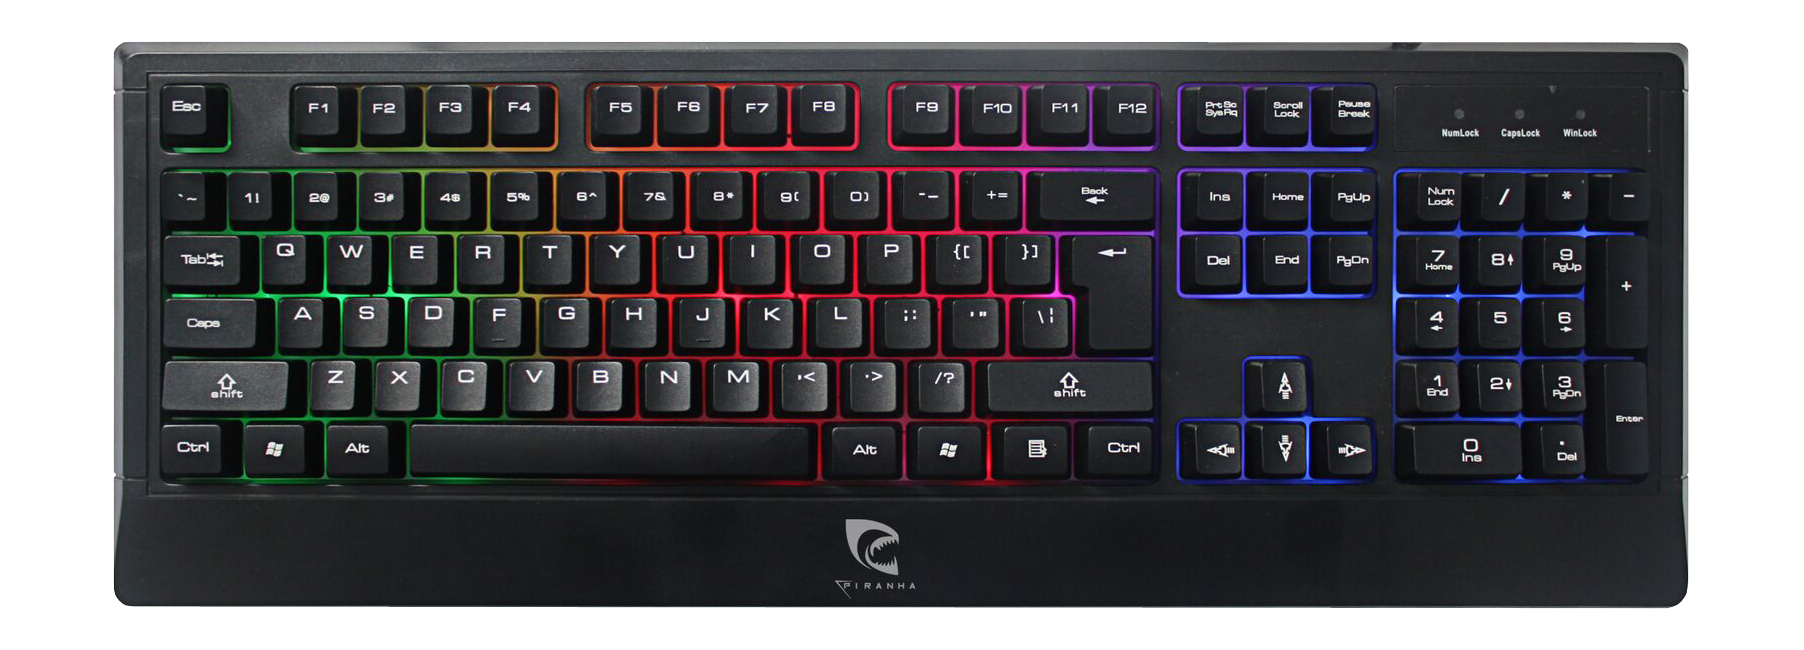 Piranha Gaming Keyboard K20